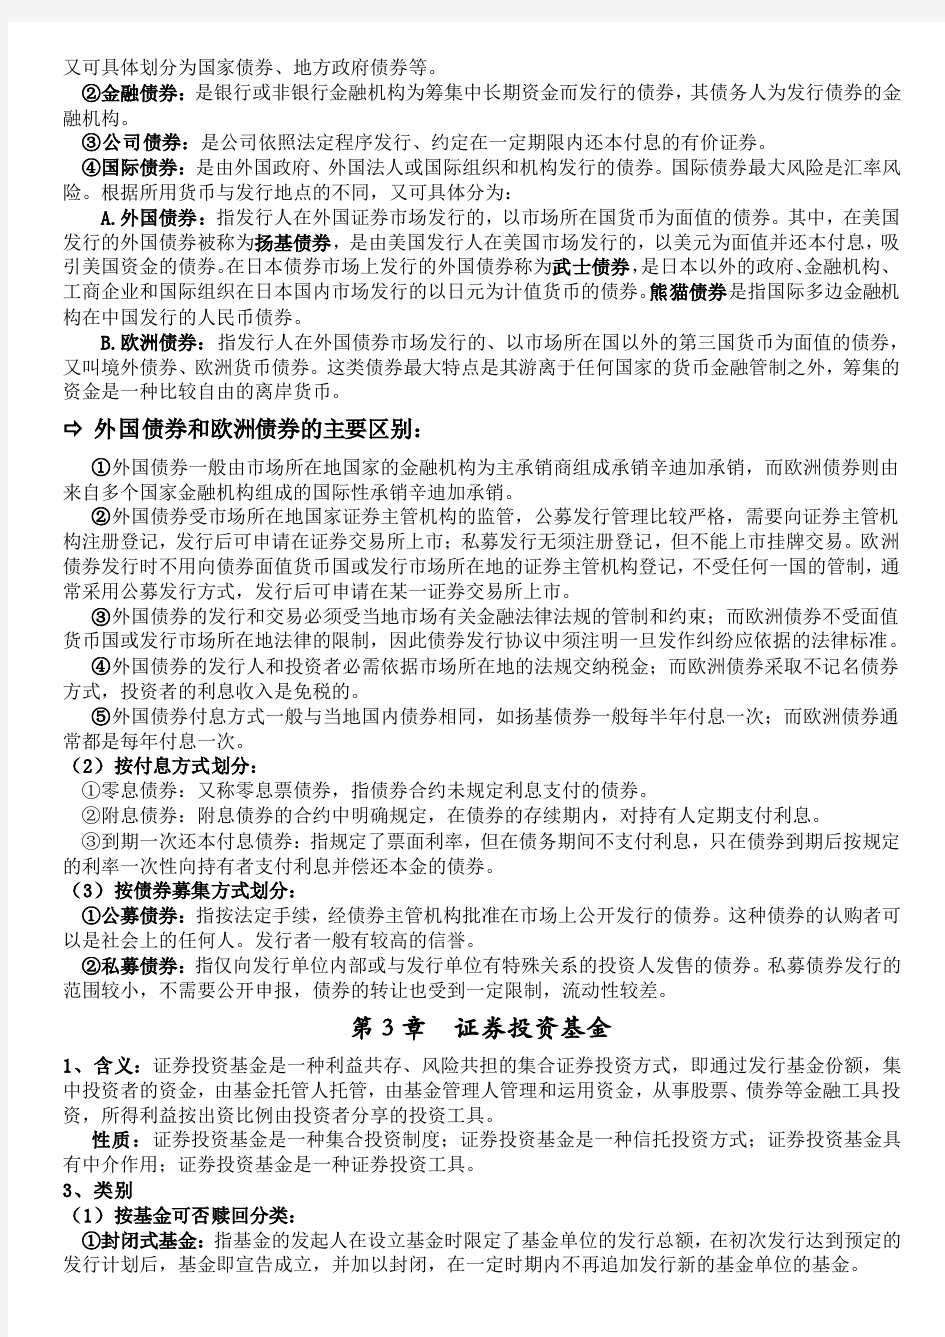 湘潭大学证券投资学期末考试资料(自己整理)